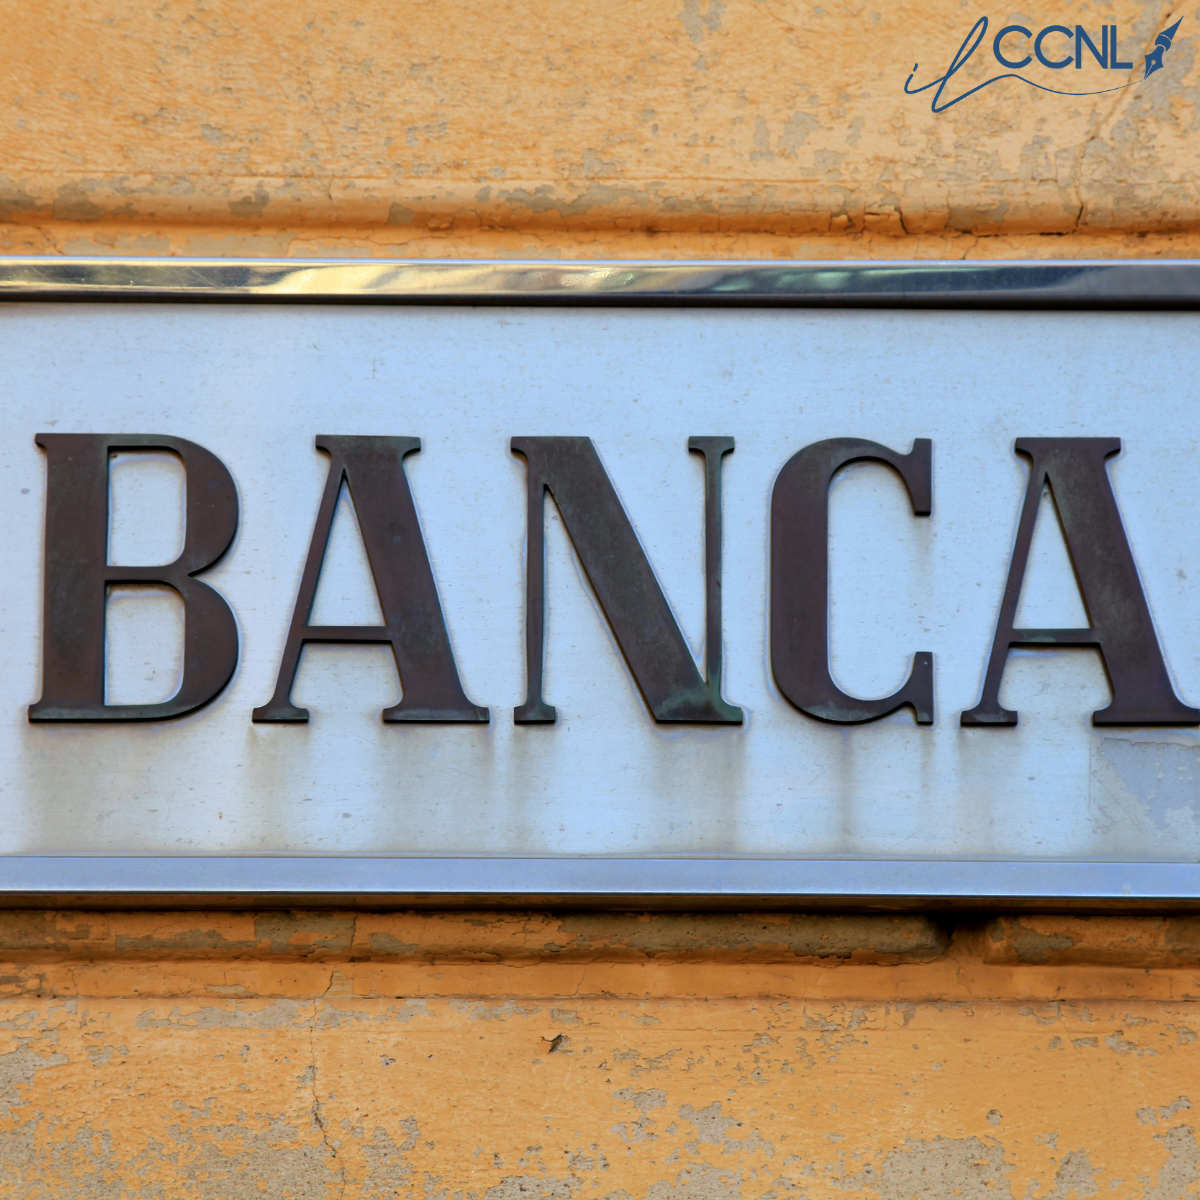 Banche di Credito Cooperativo - Casse Rurali ed Artigiane: Aggiornamento minimi contrattuali: